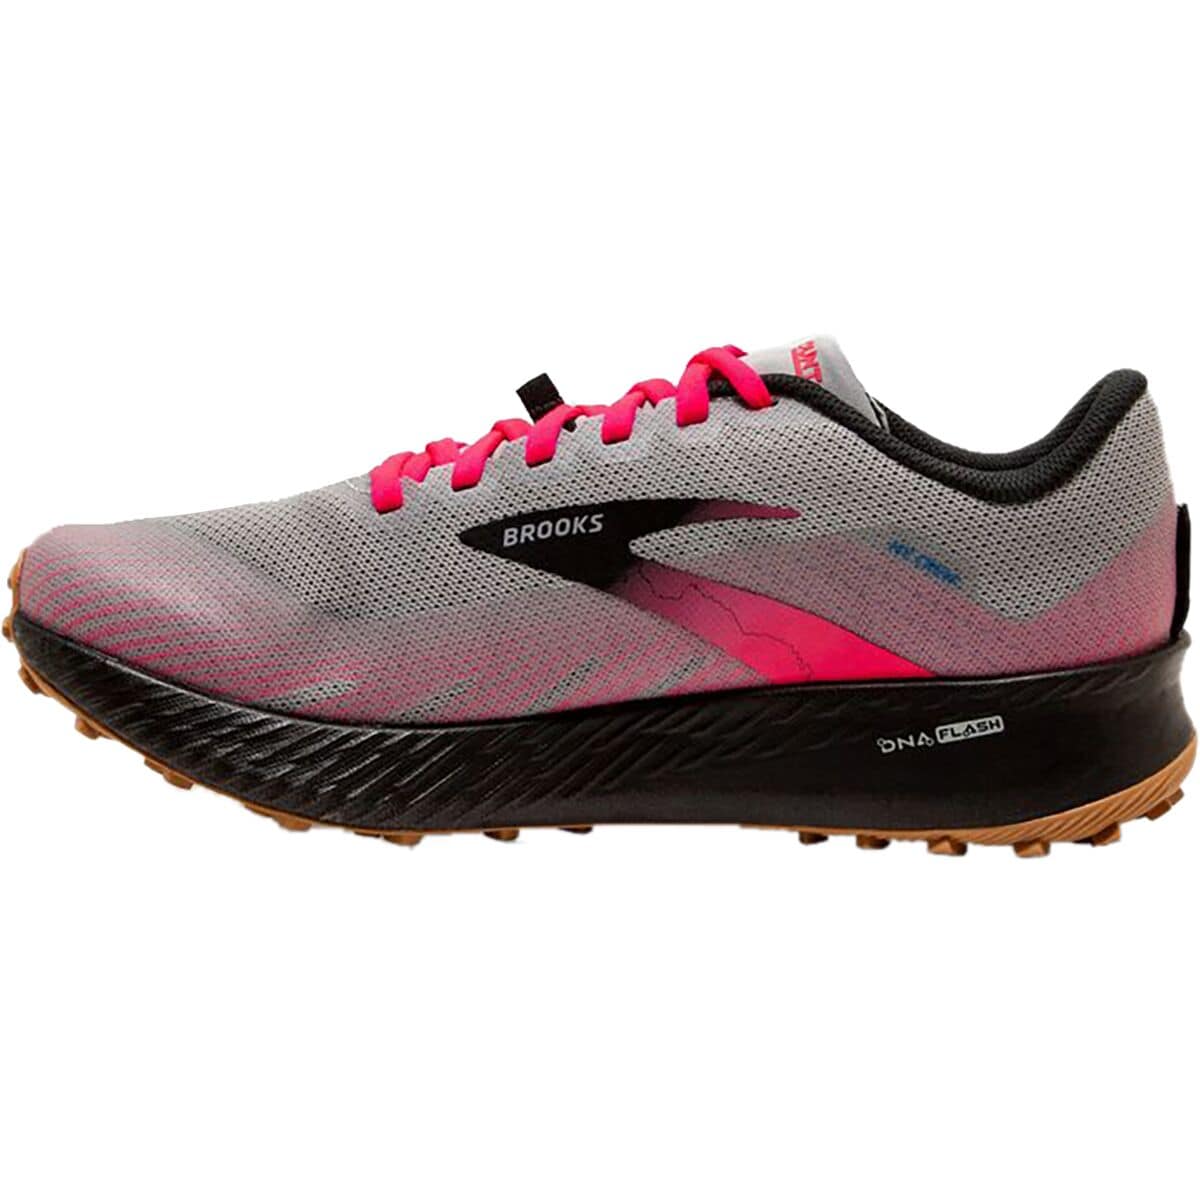 Brooks Catamount Trail Running Shoe - Women's - Footwear